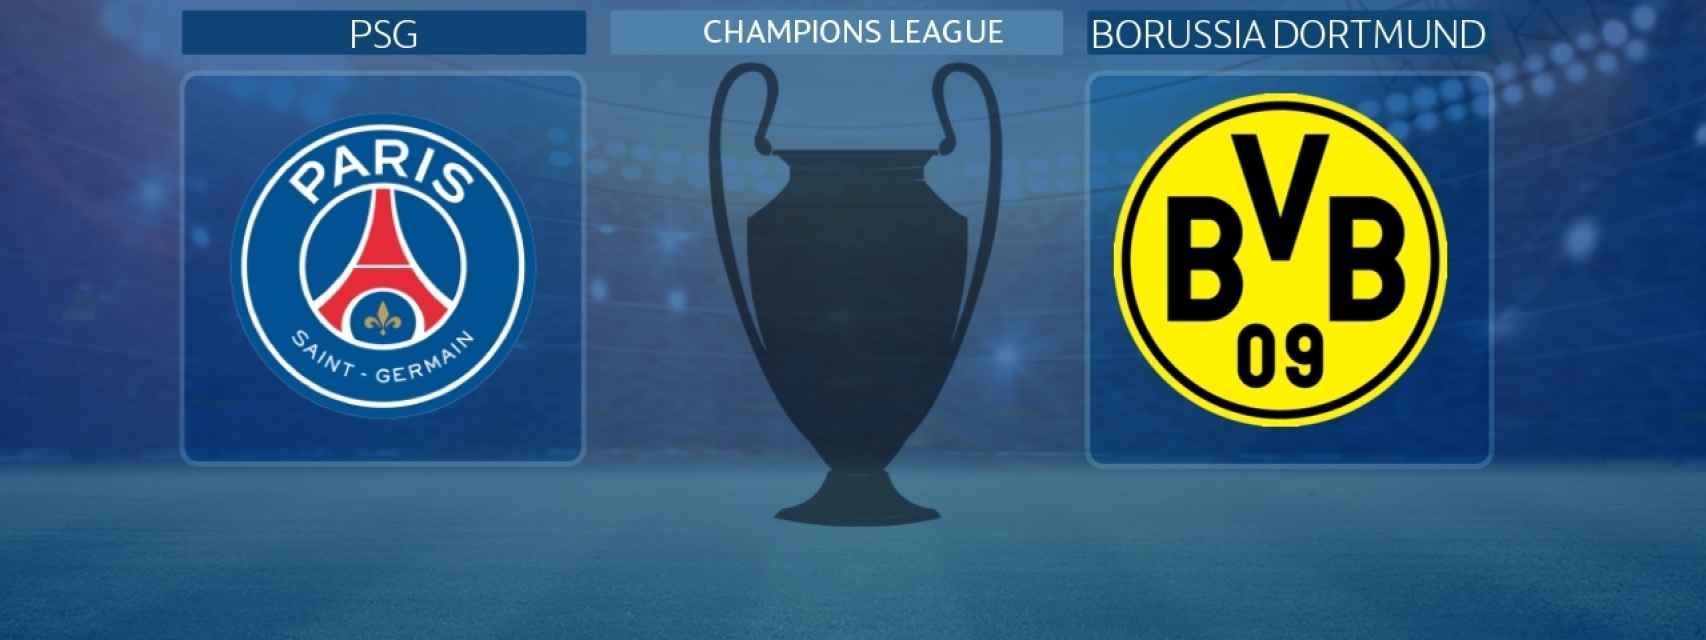 PSG - Borussia Dortmund